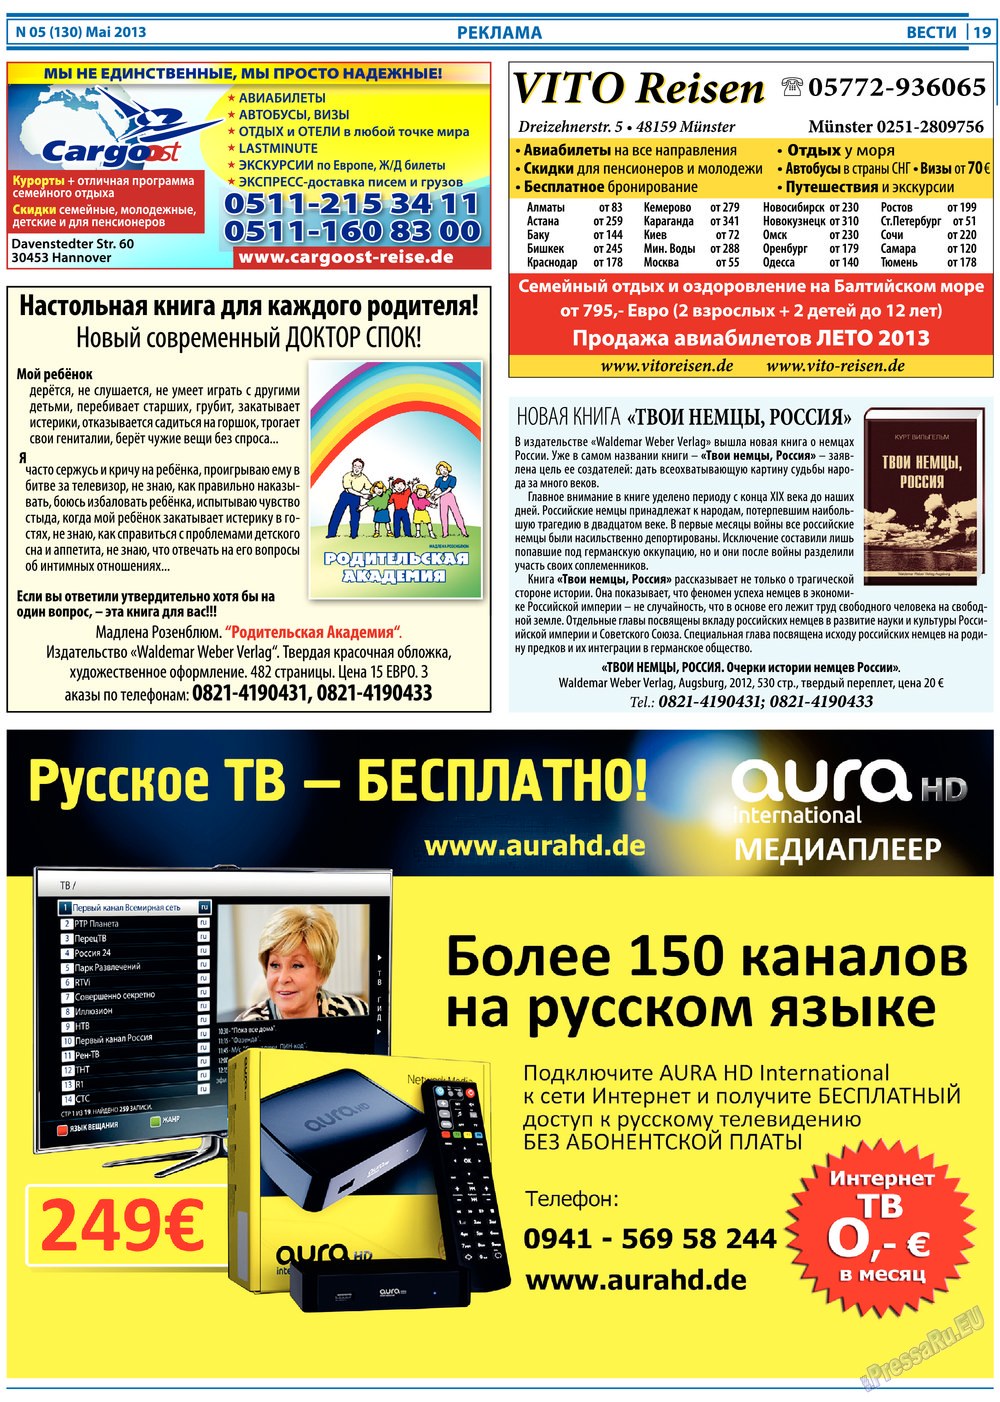 Вести, газета. 2013 №5 стр.19